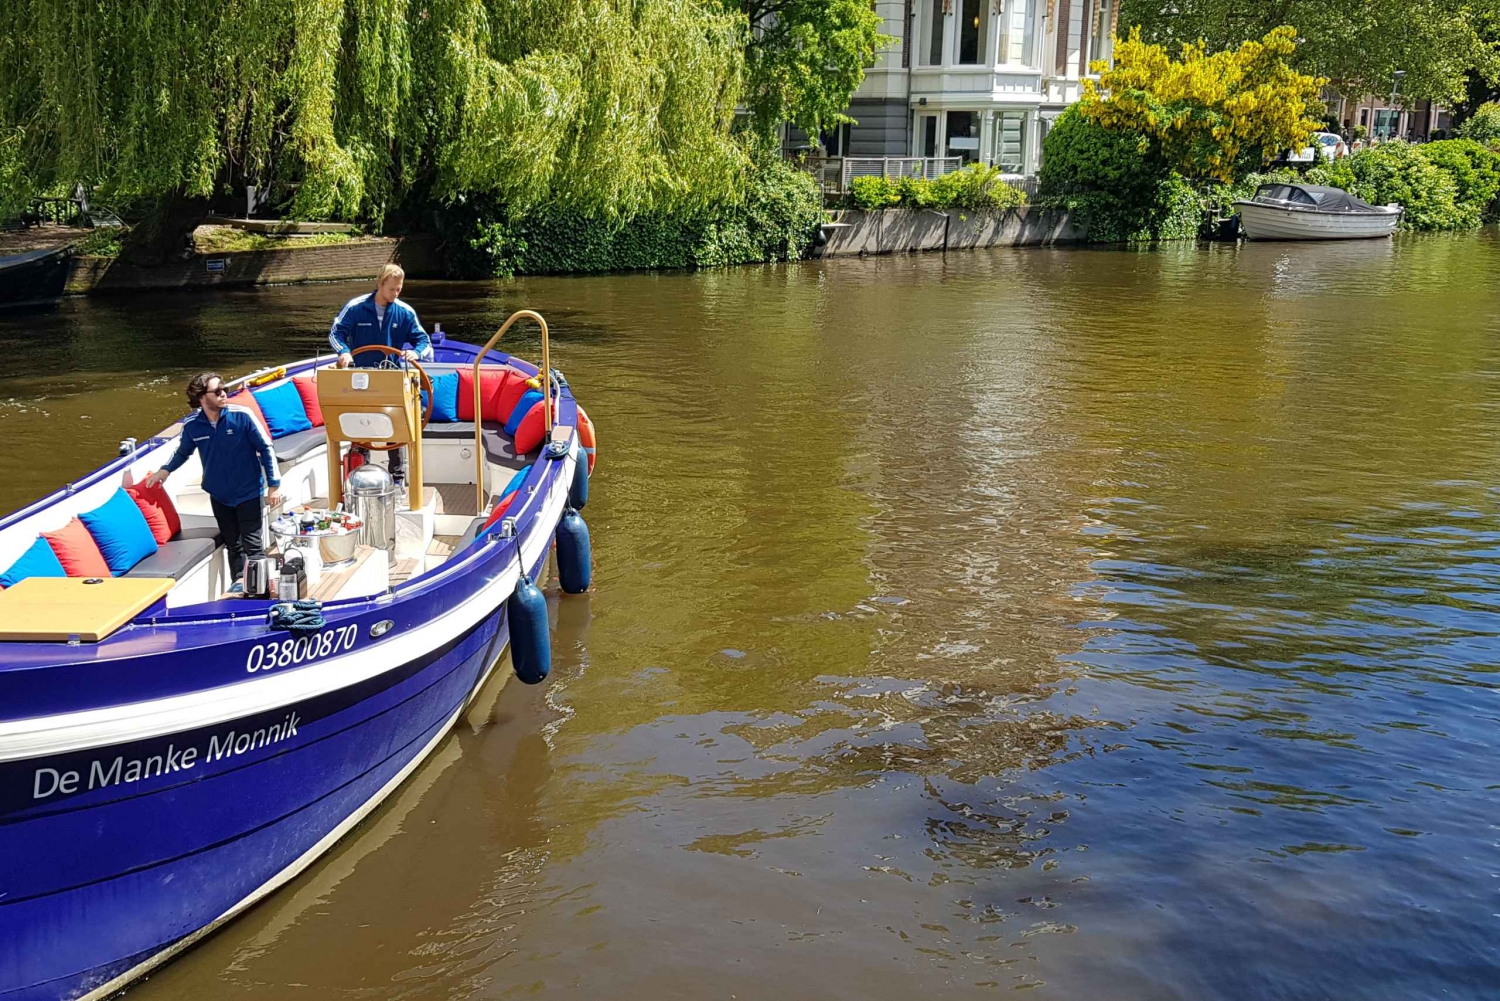 amsterdam booze canal cruise